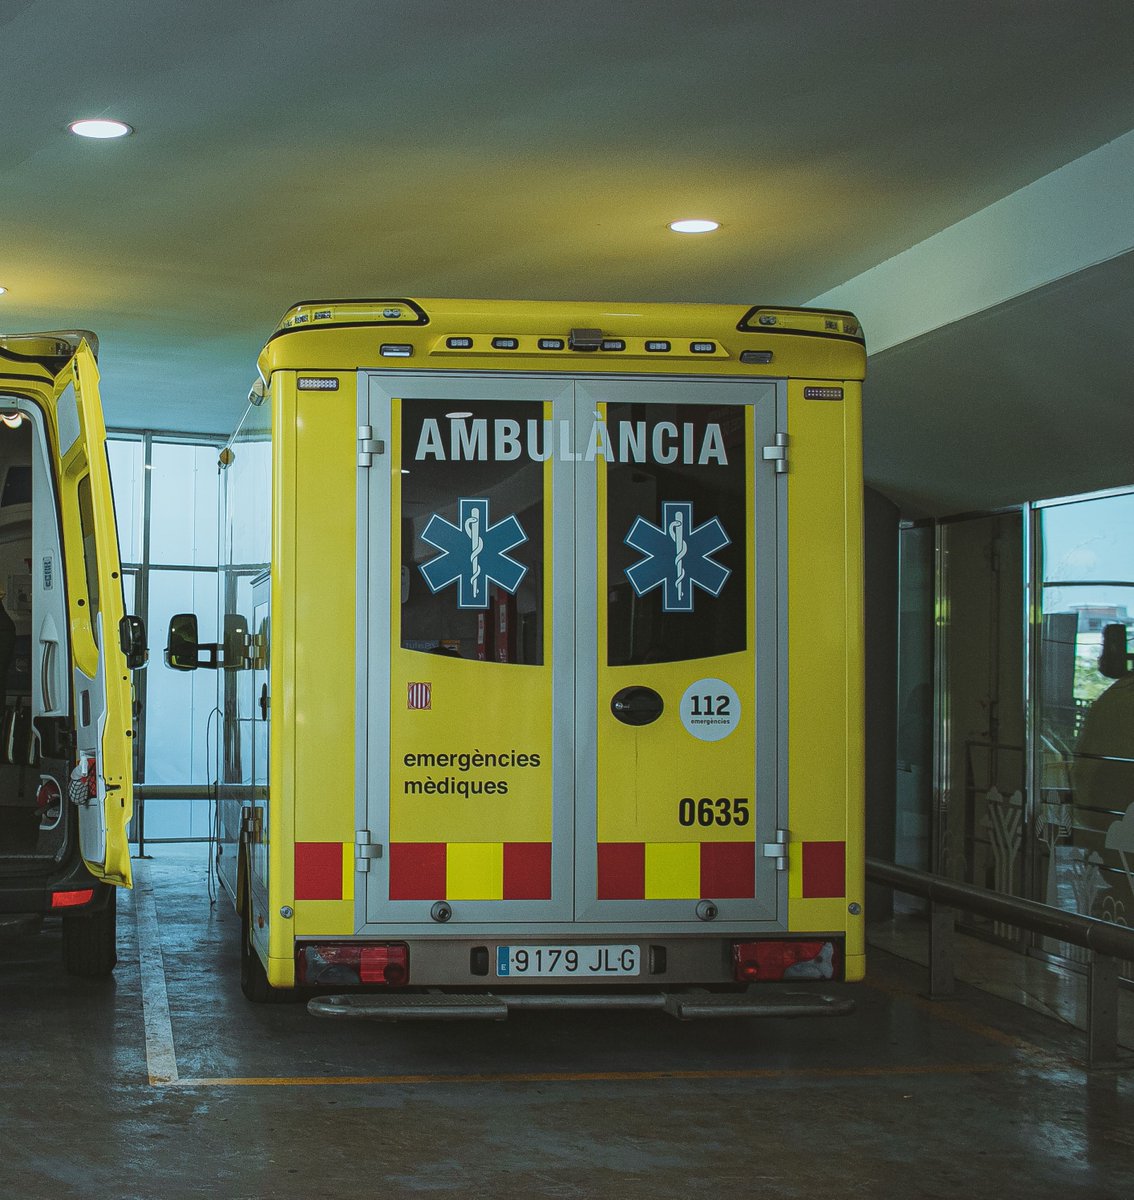 ➡️ El #SEM Pediàtric compta amb dues ambulàncies de suport vital avançat: una situada a l'hospital @vallhebron i l'altra a @SJDbarcelona_es.

Ambdues estan disponibles les 24 hores i 365 dies l'any 👉 bit.ly/3QWJ1je